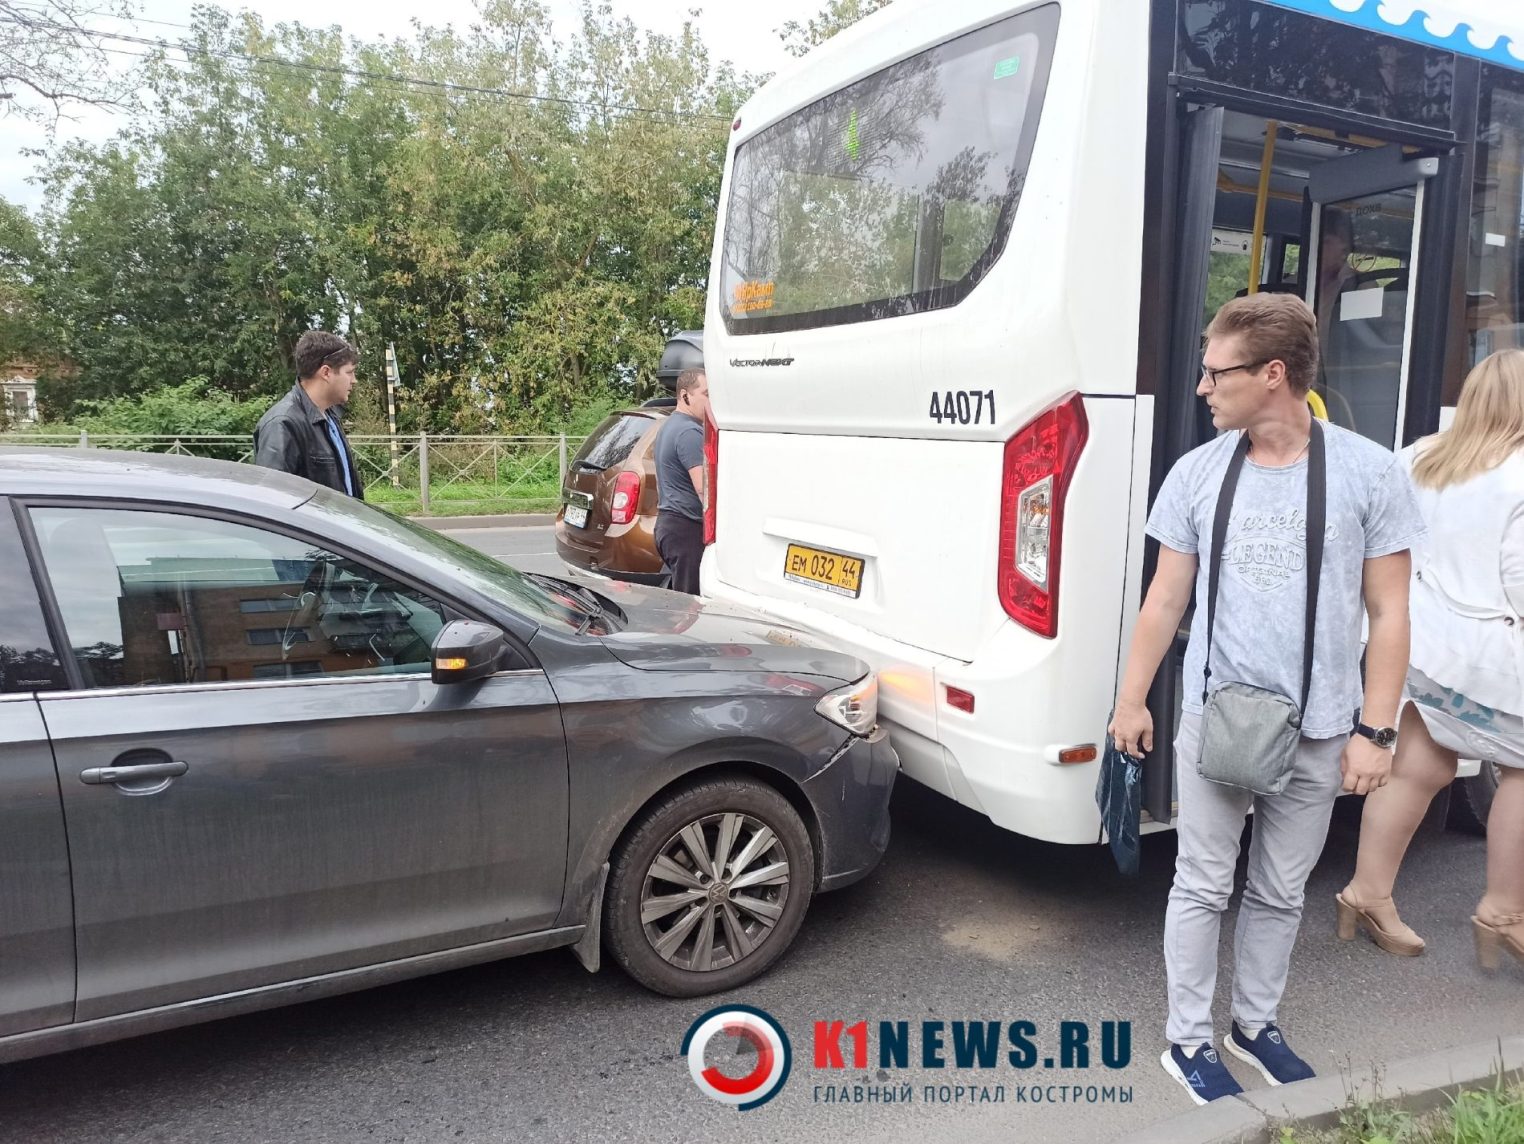 Новый автобус попал в аварию в Костроме